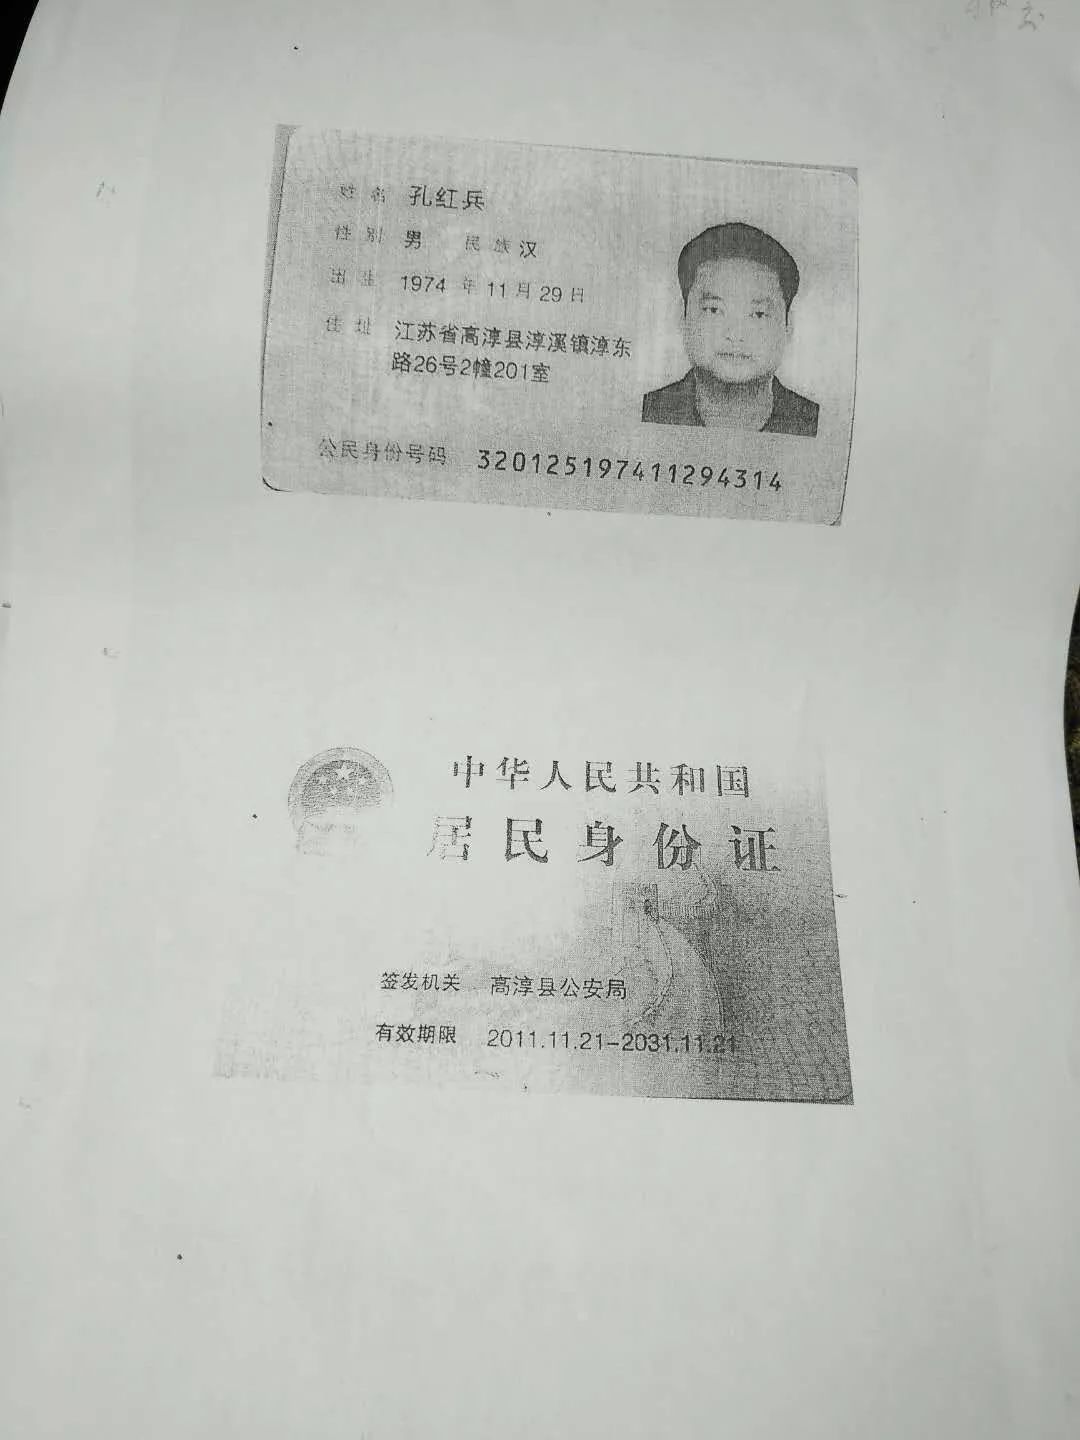 其中工商内档中"股东"孔红兵的居民身份证复印件显示有效期为"2008年7